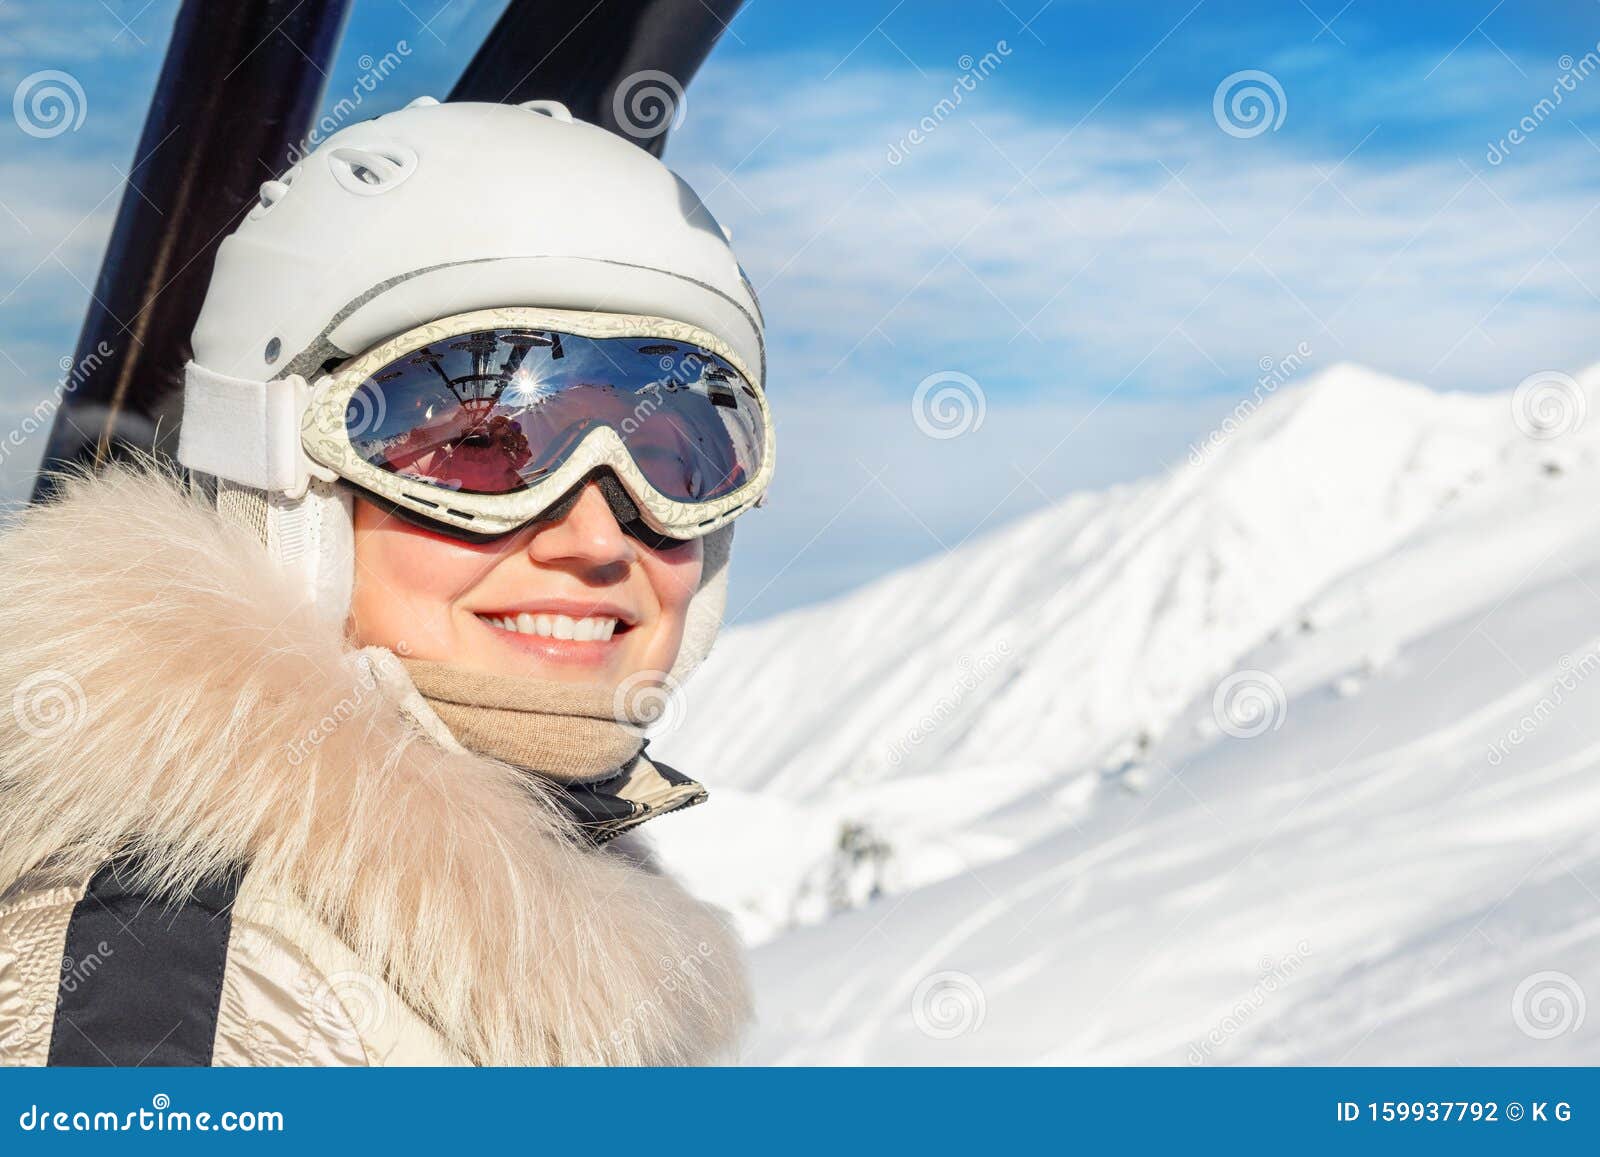 Women Skiing Mountains